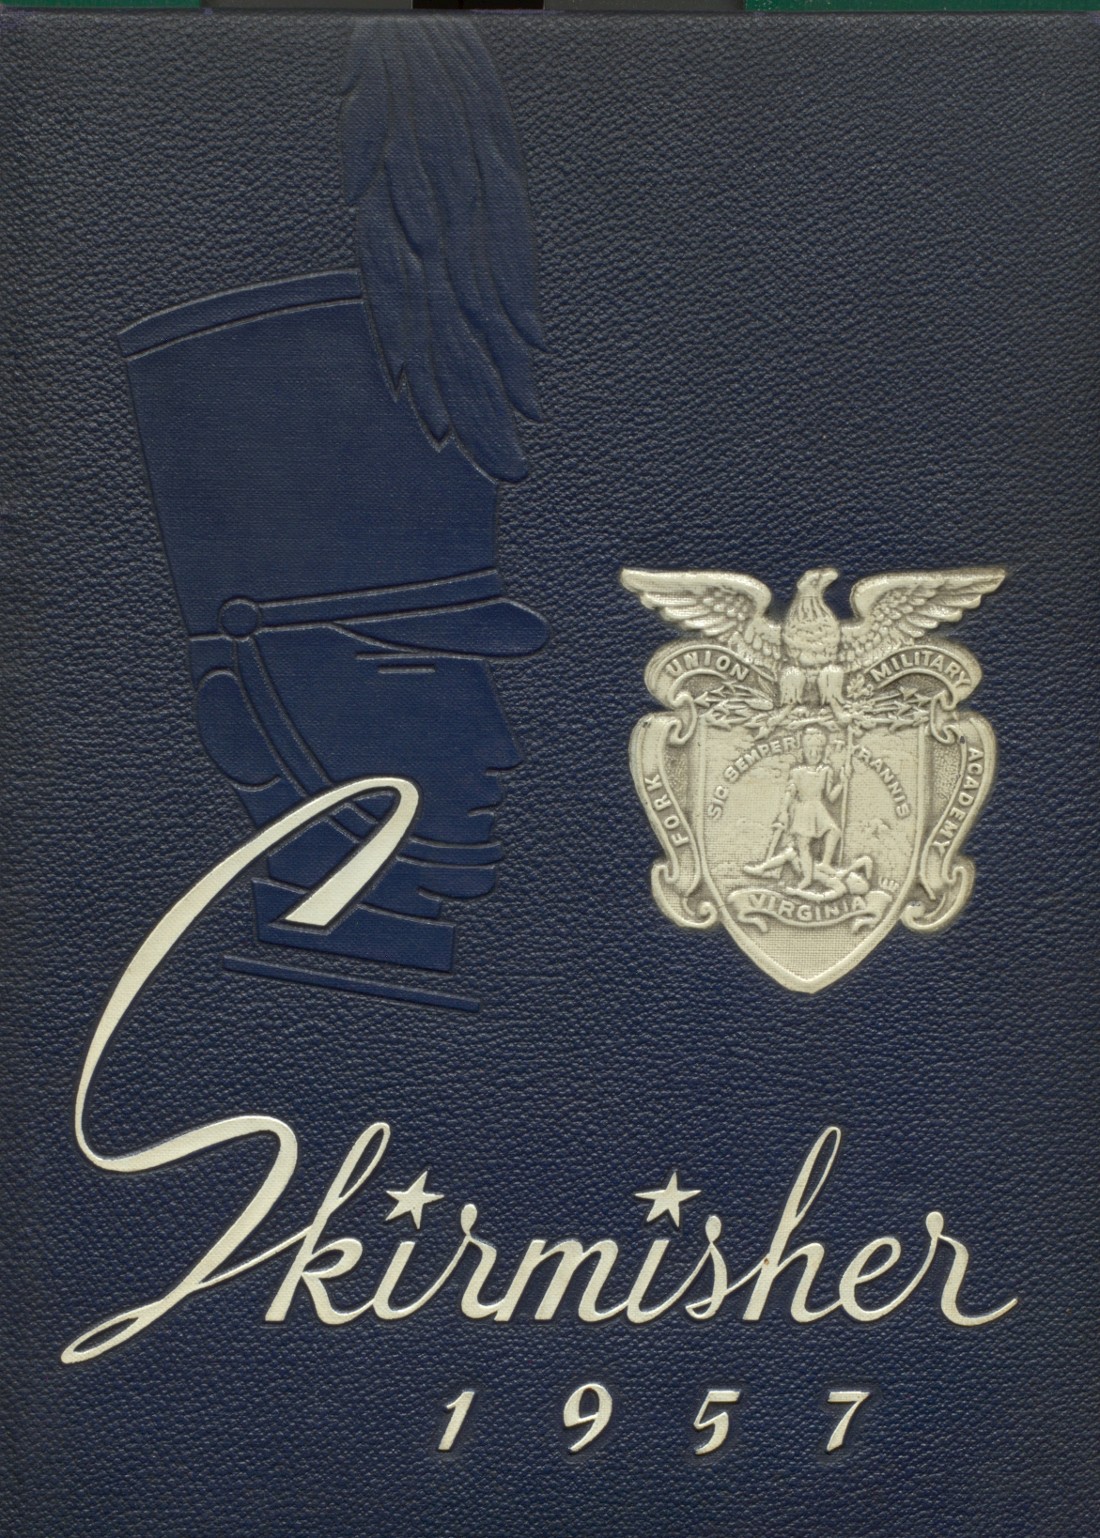 Verdienstauszeichnung für Ostvölker. Second class gold class 1957